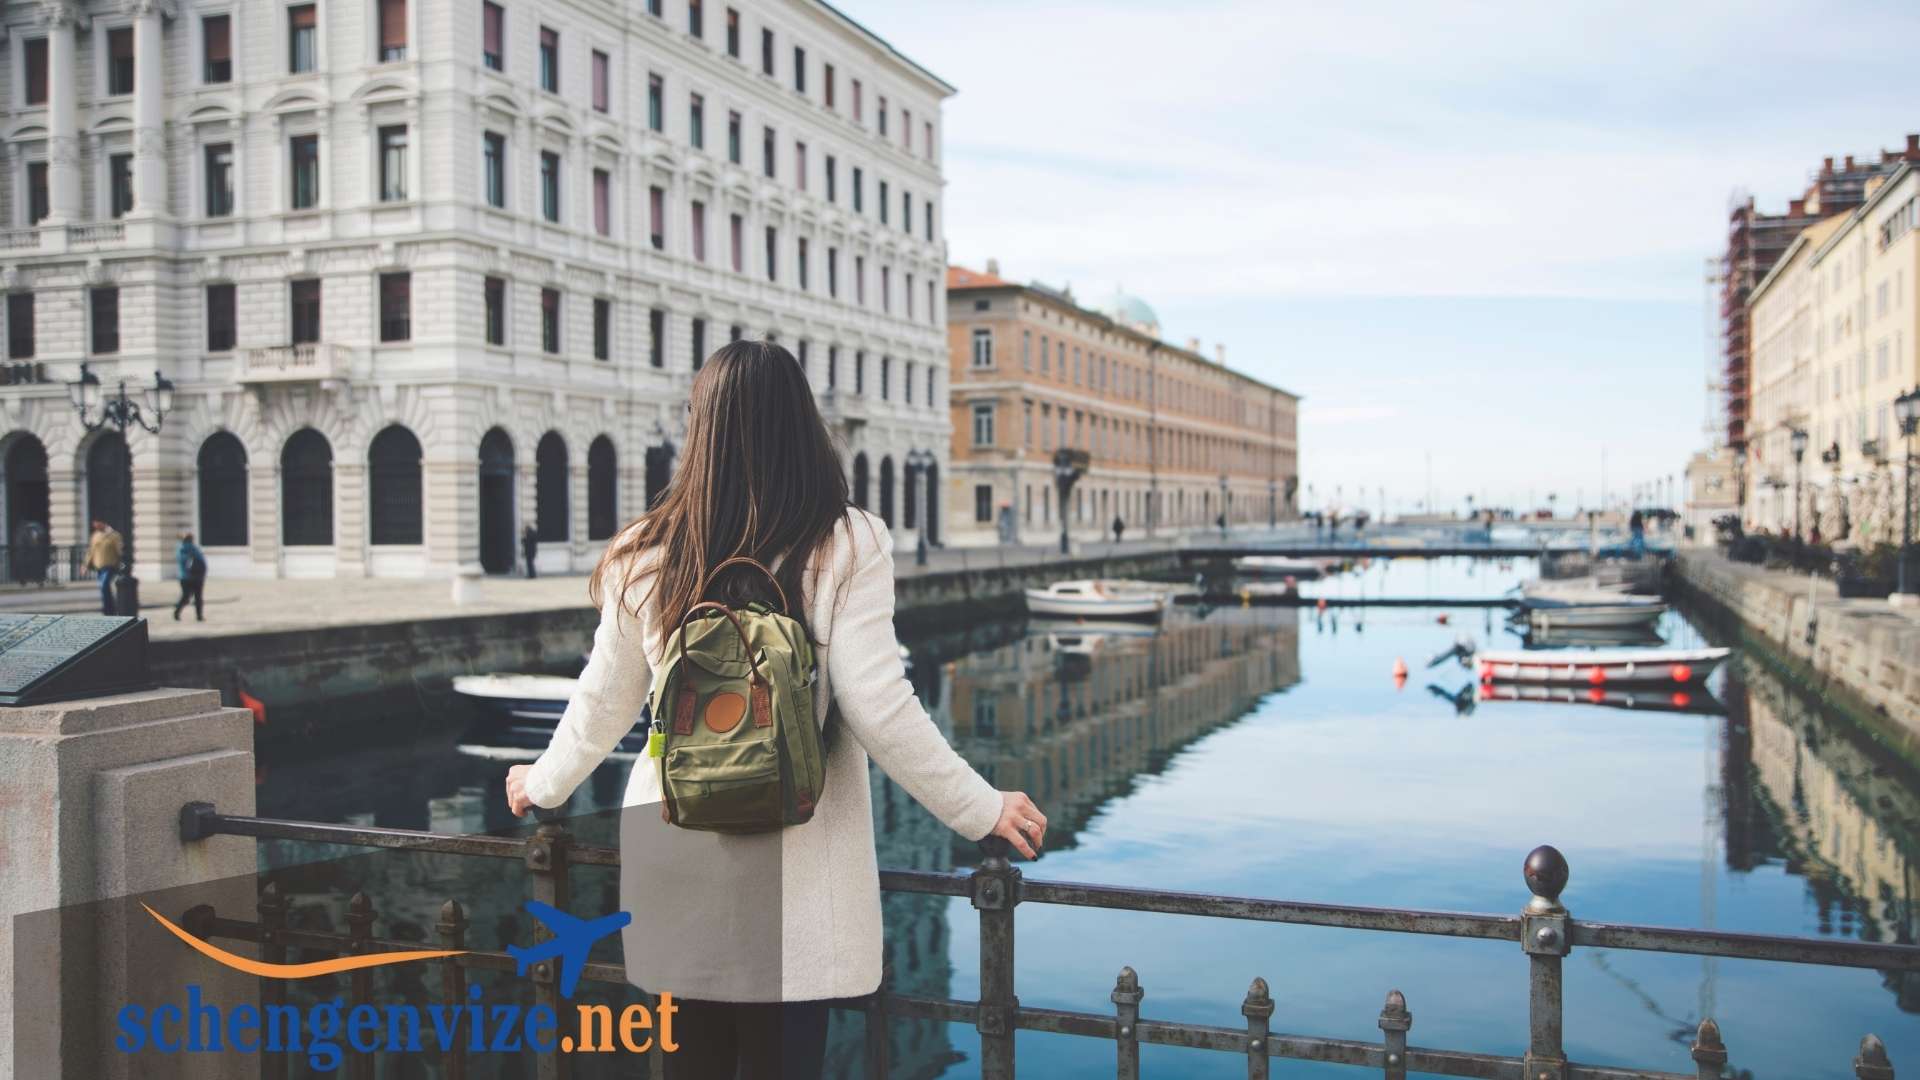 İtalya Turistik Vize için gerekli evraklar açıklamaları